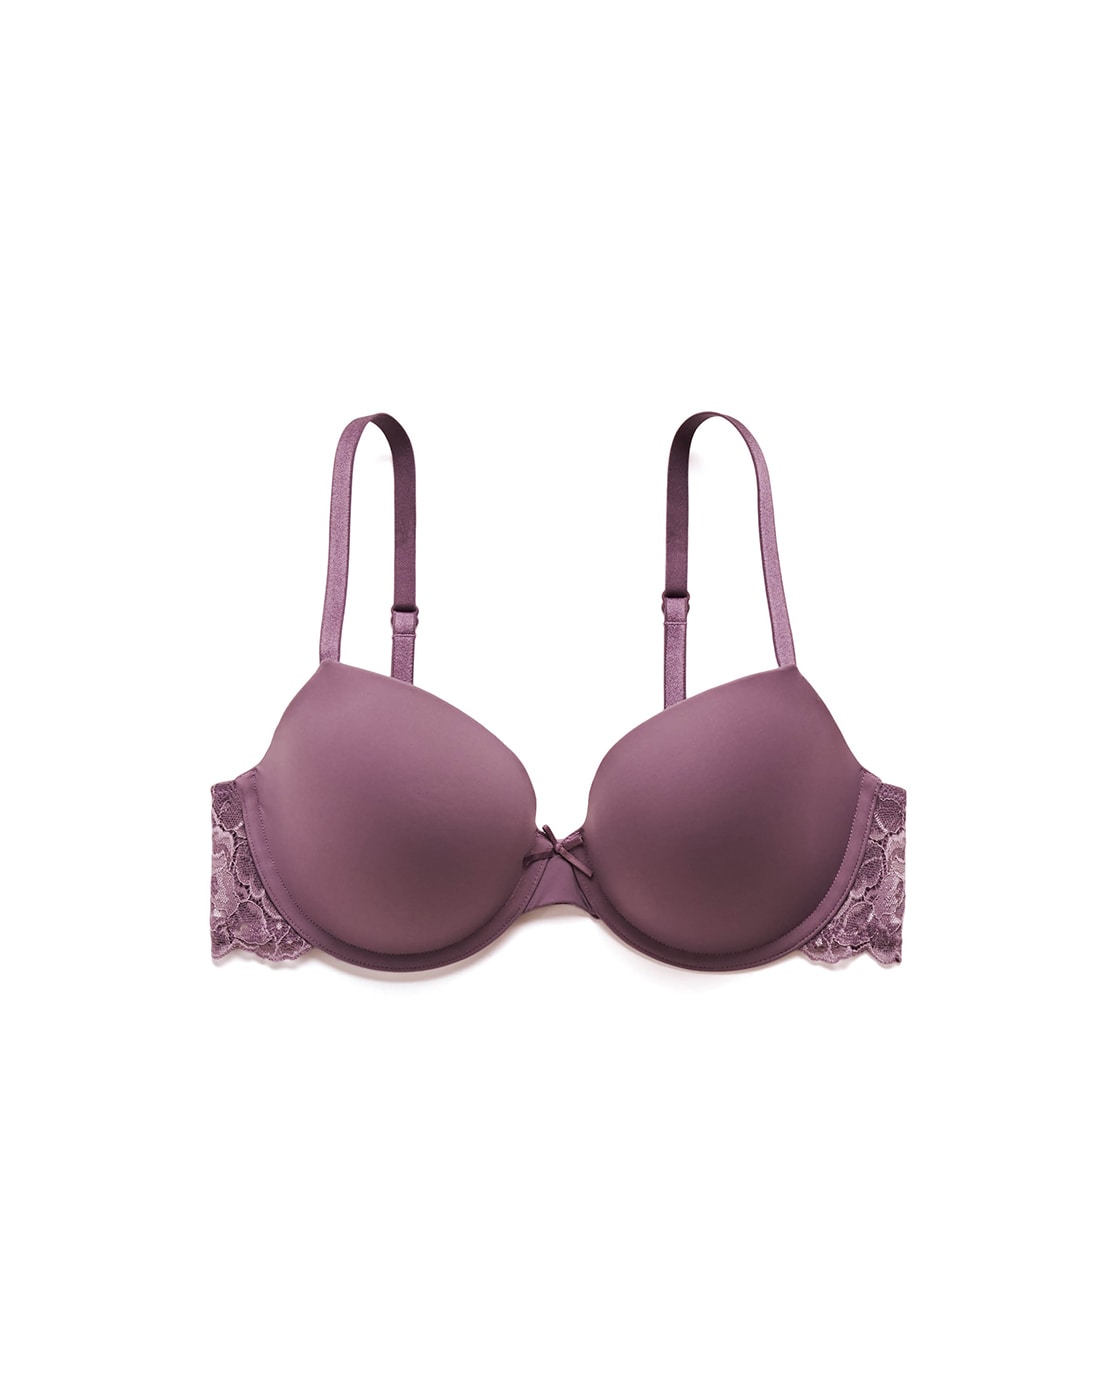 Buy Purple Bras for Women by La Vie En Rose Online